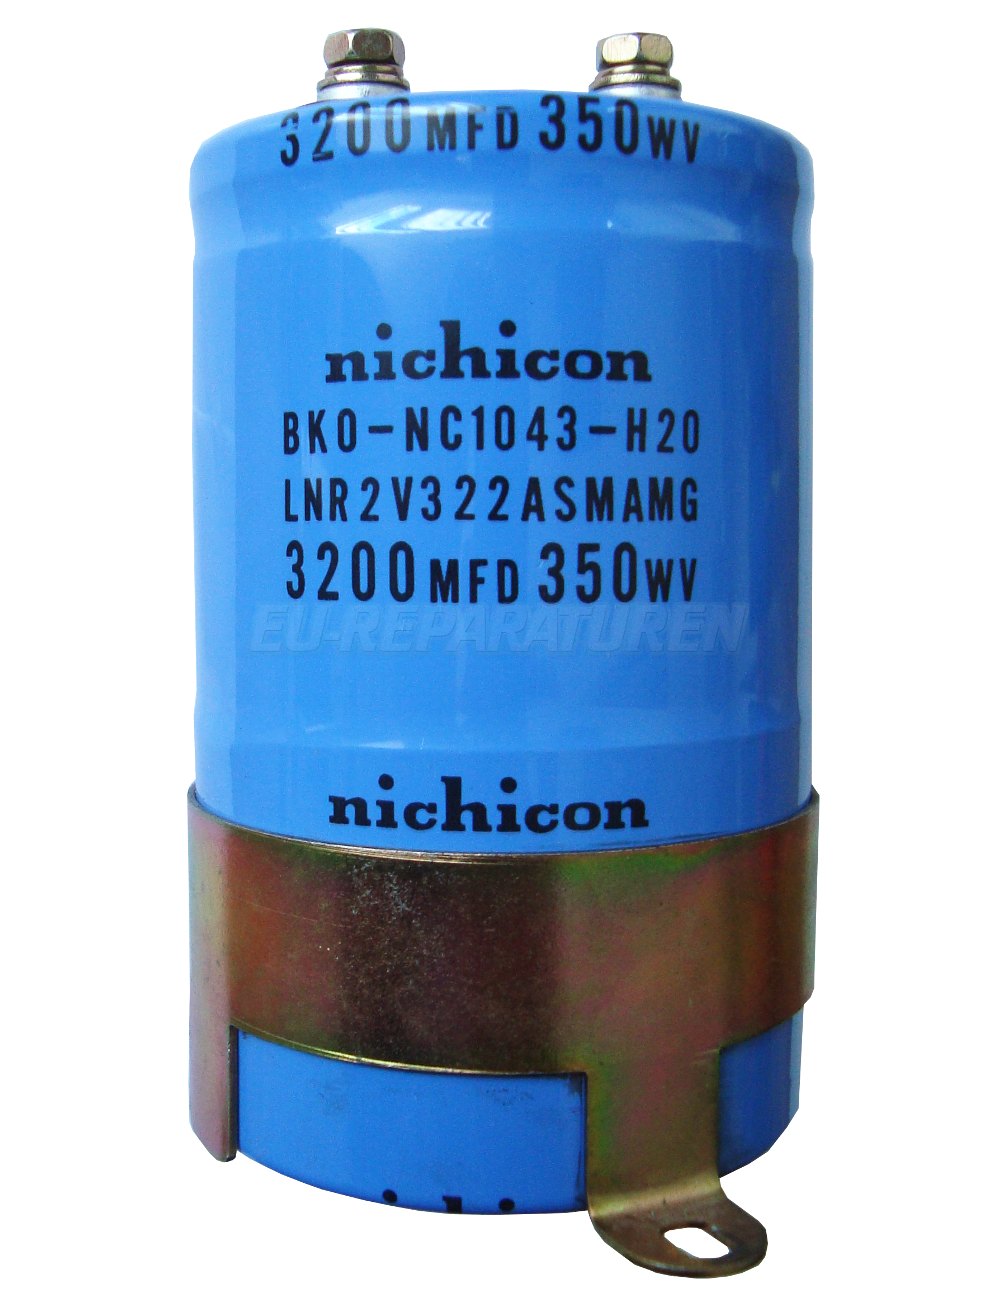 SHOP, Kaufen: NICHICON BKO-NC1043-H20 KONDENSATOR